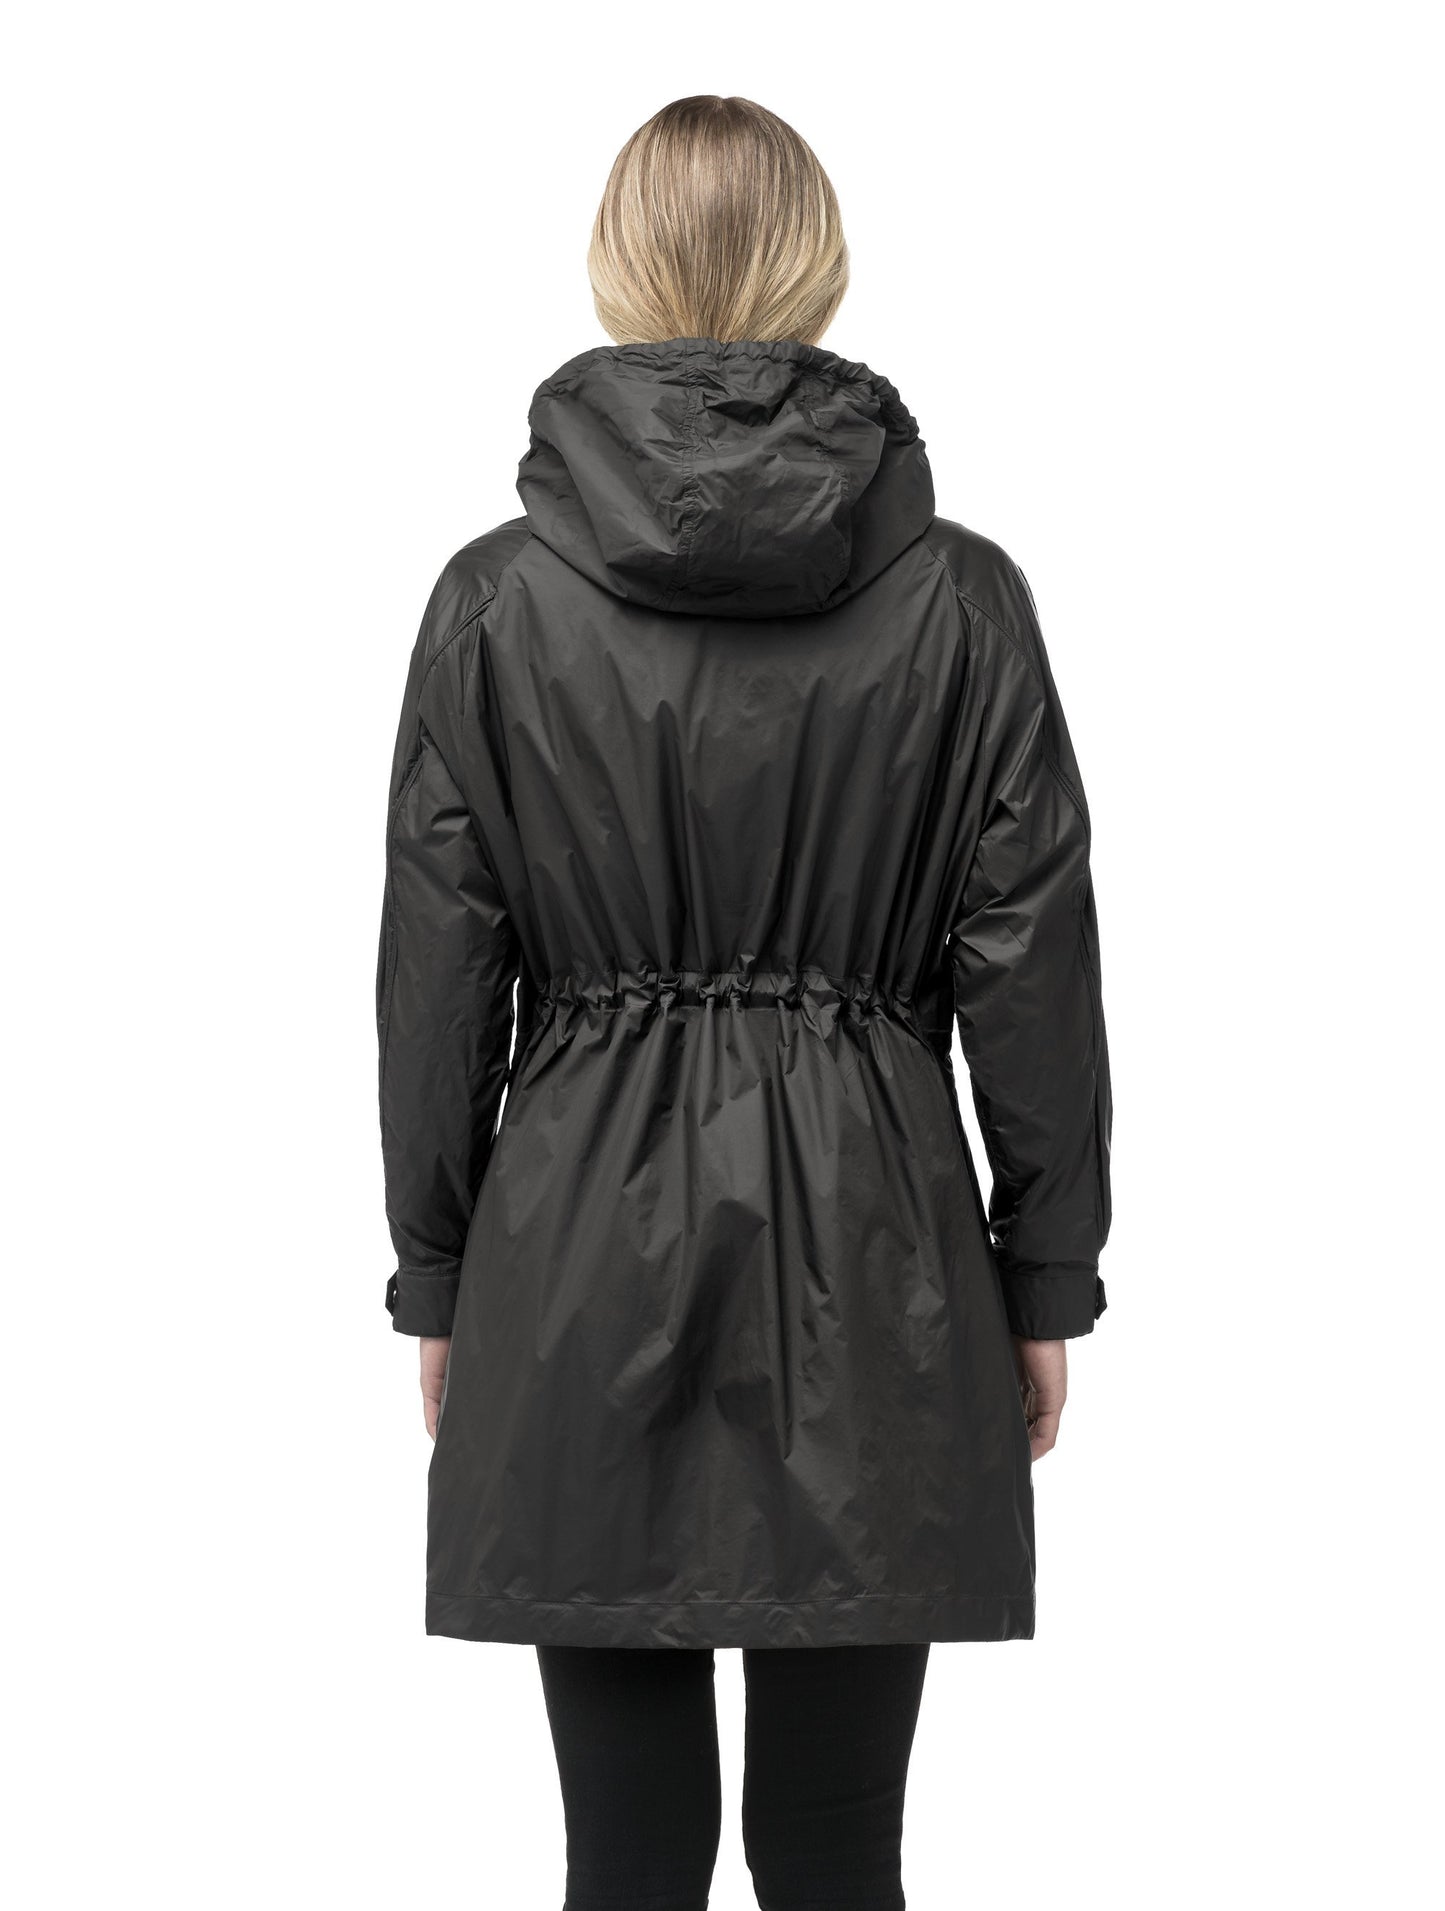 Women's knee-length zip-up windbreaker in Black